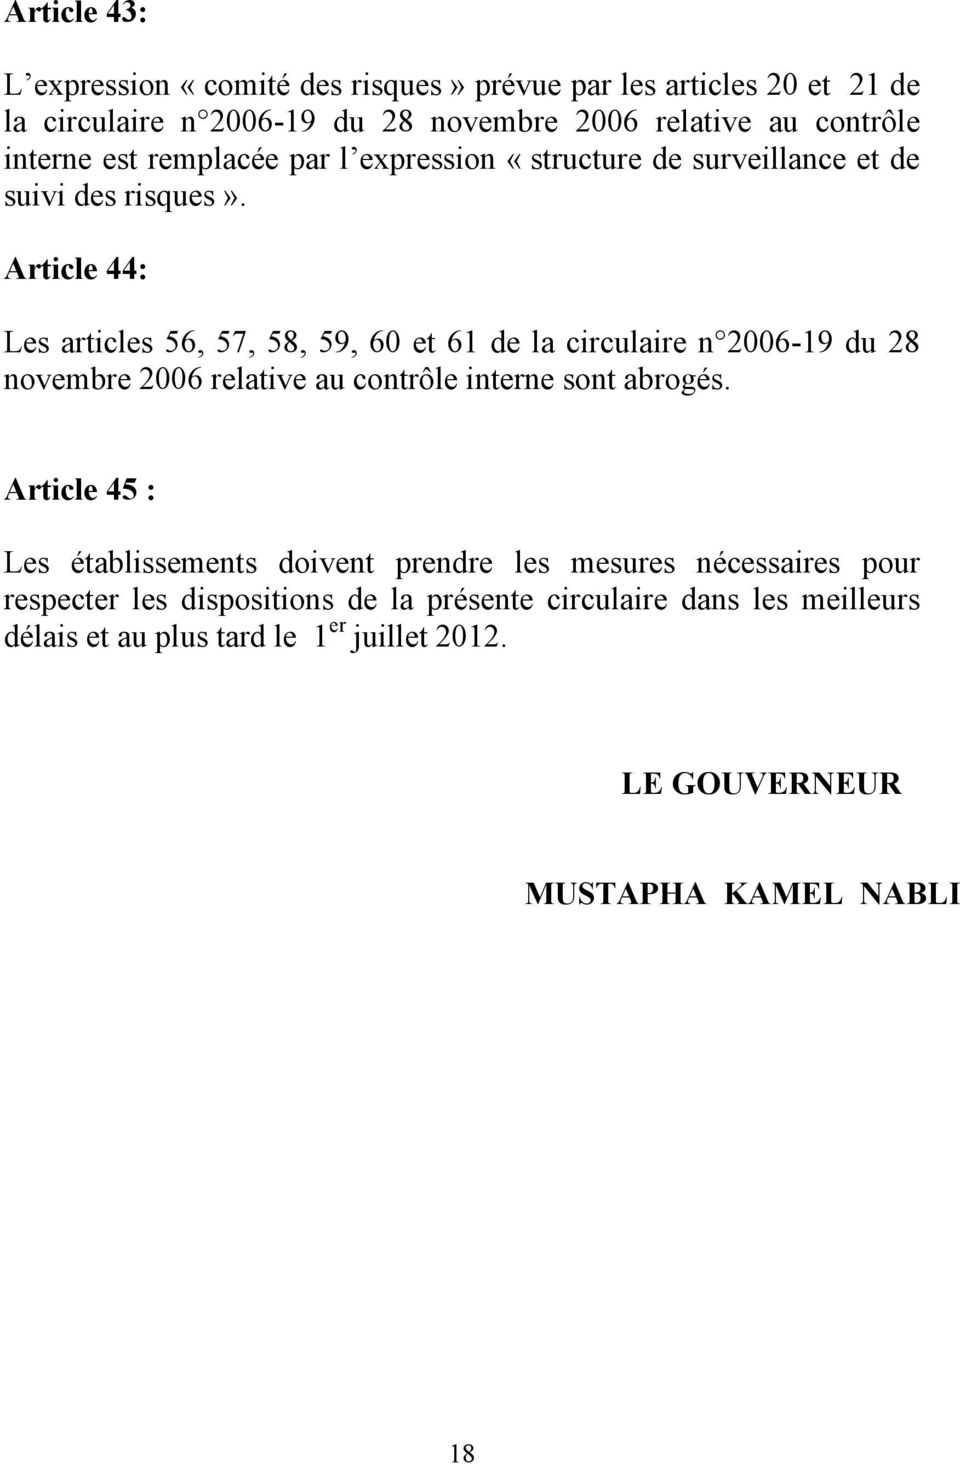 Article 44: Les articles 56, 57, 58, 59, 60 et 61 de la circulaire n 2006-19 du 28 novembre 2006 relative au contrôle interne sont abrogés.